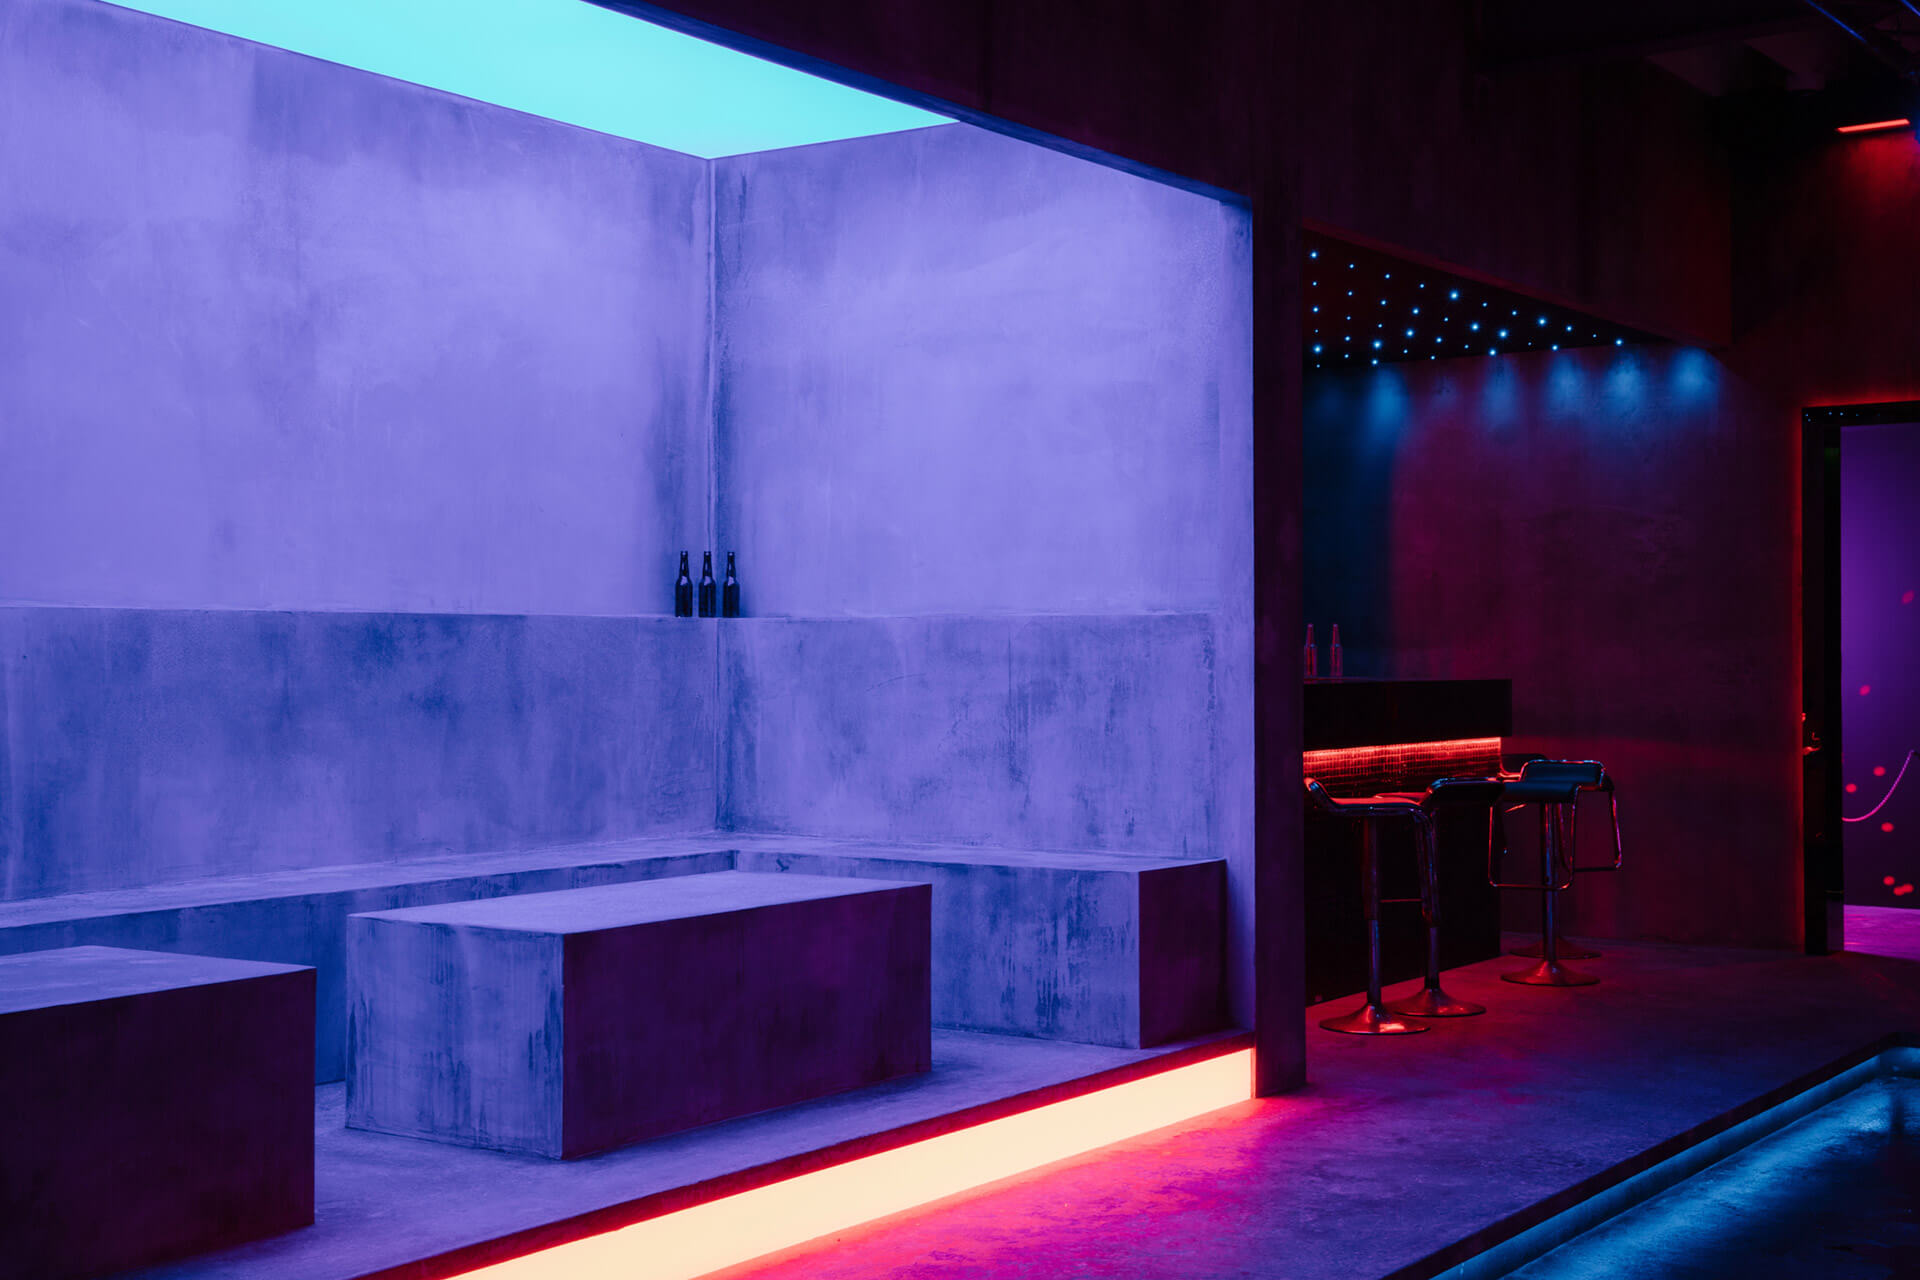 CHEN WEI, Drunken Dance Hall, A Blueprint for Ruins exhibition, White Rabbit Gallery